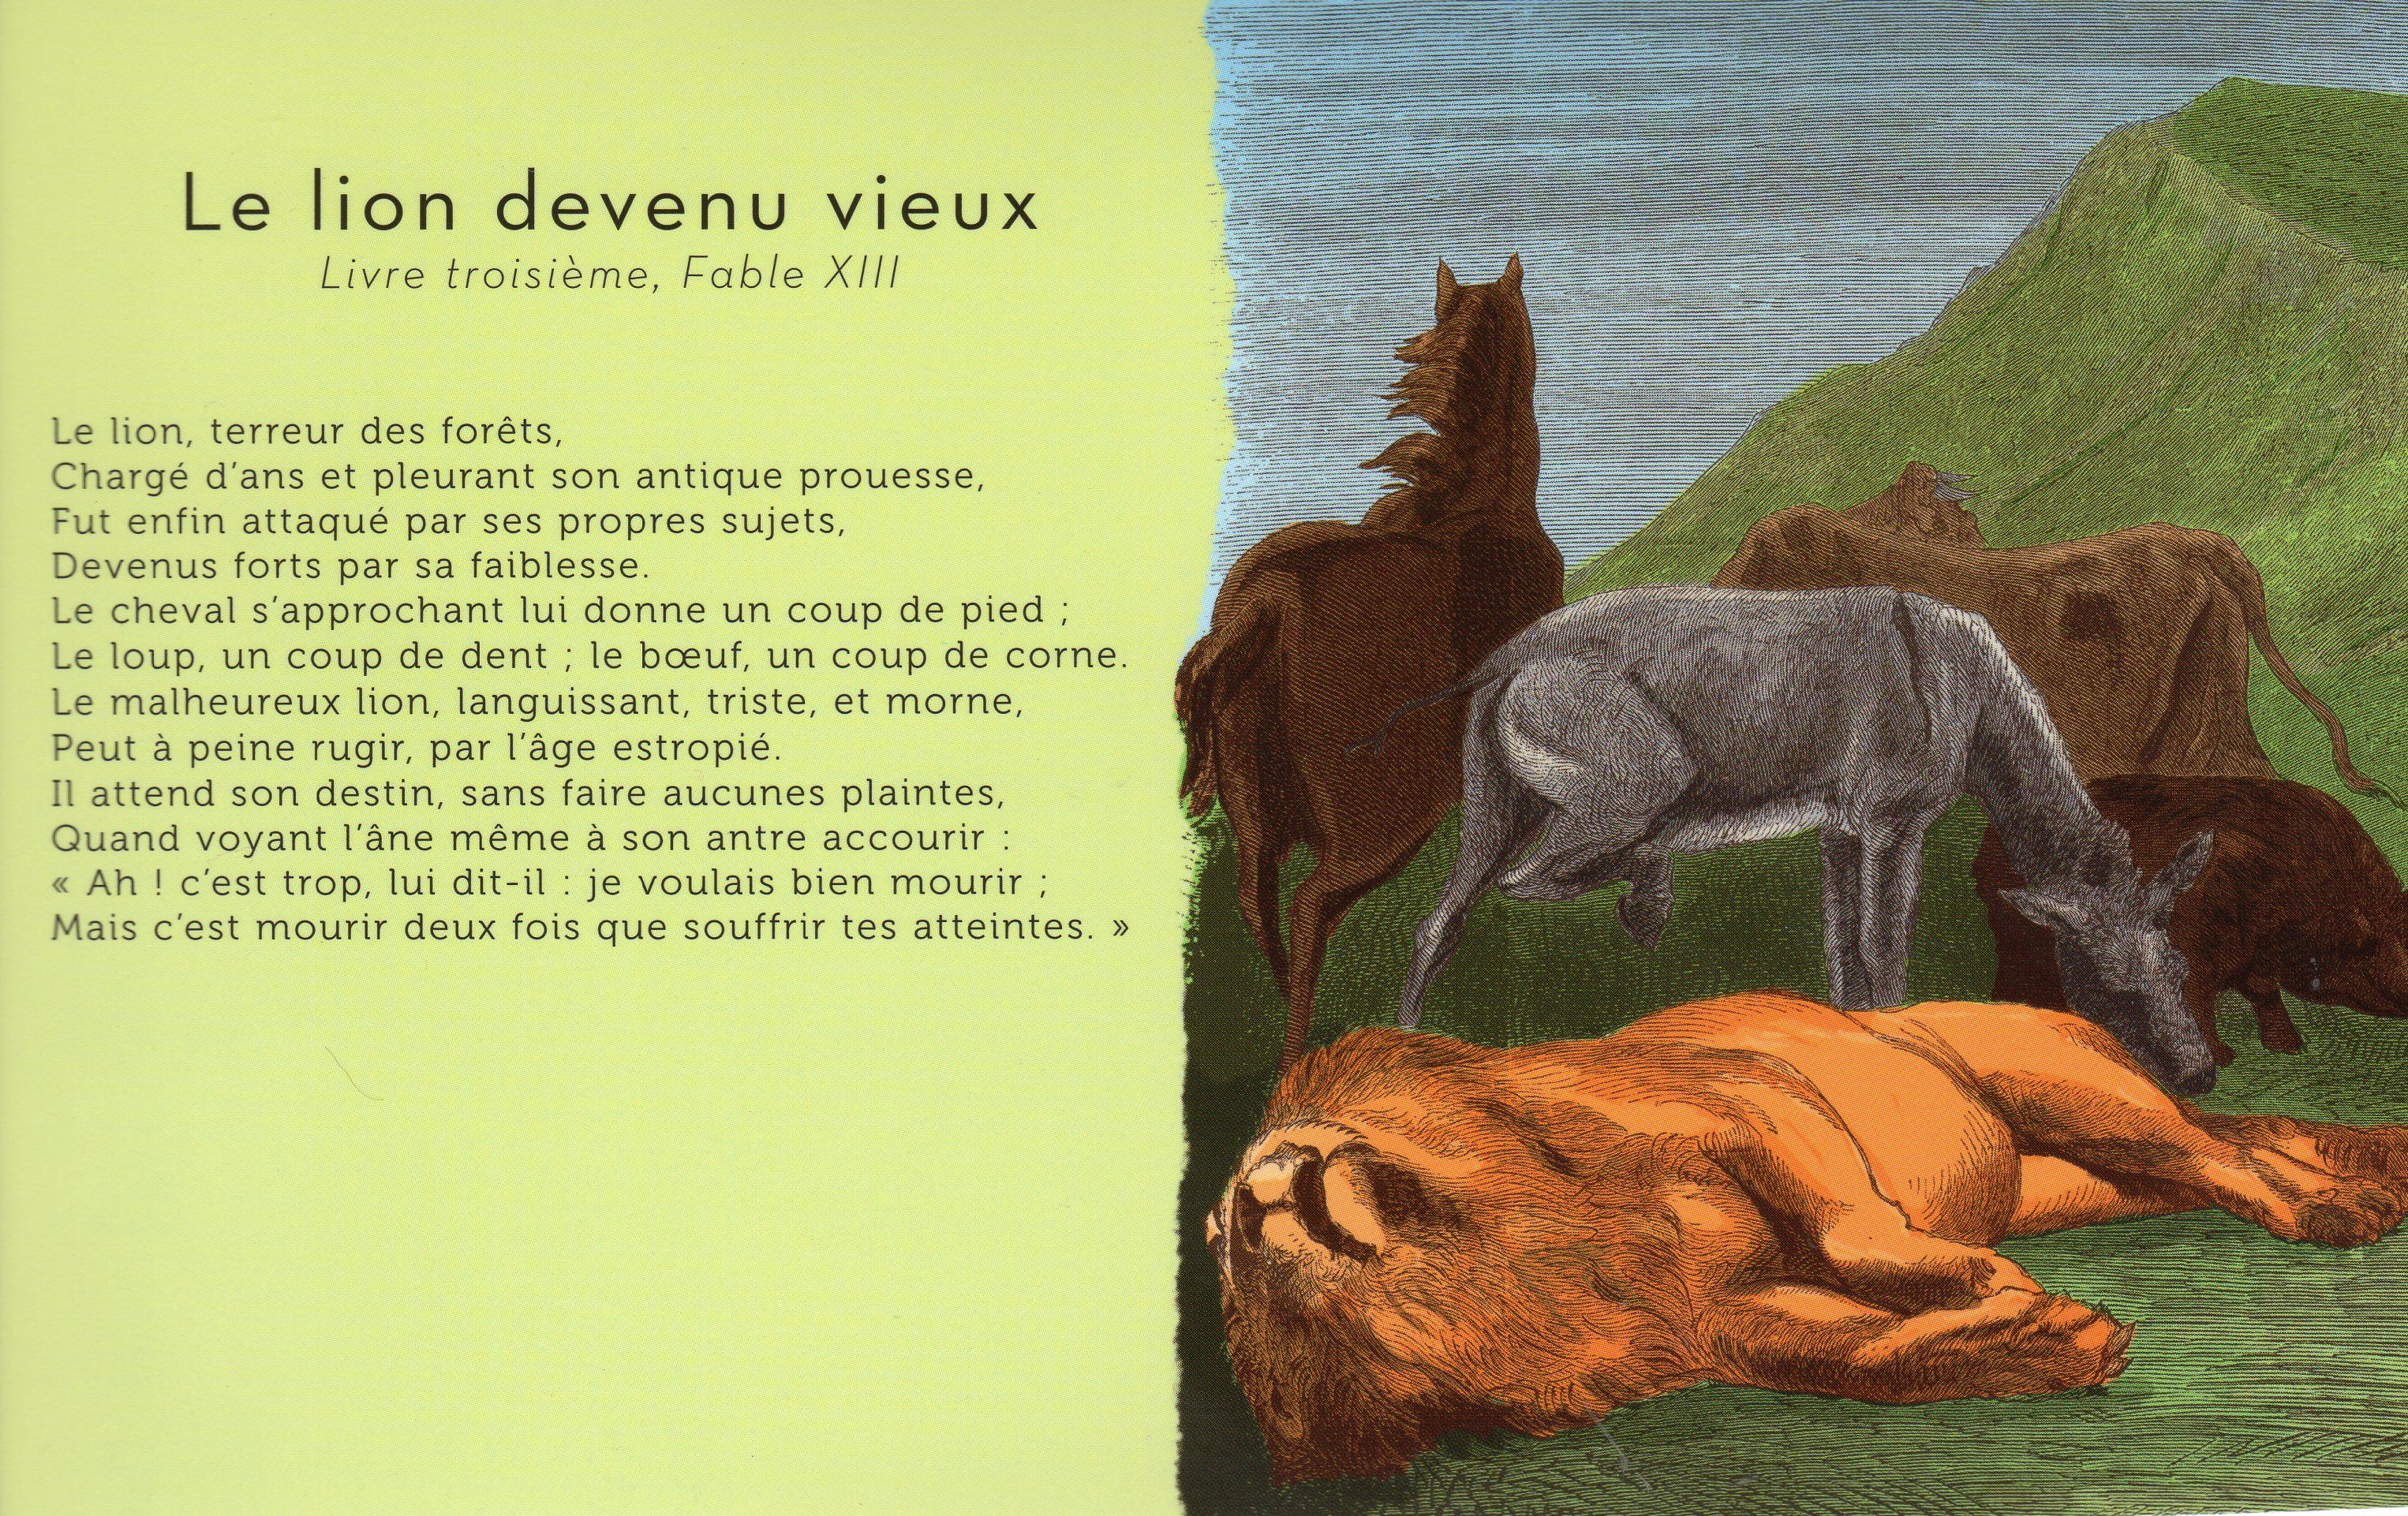 lion - "Le lion devenu vieux" Jean de La Fontaine+"Il faut du temps" Delphine JOUVE Df93c714